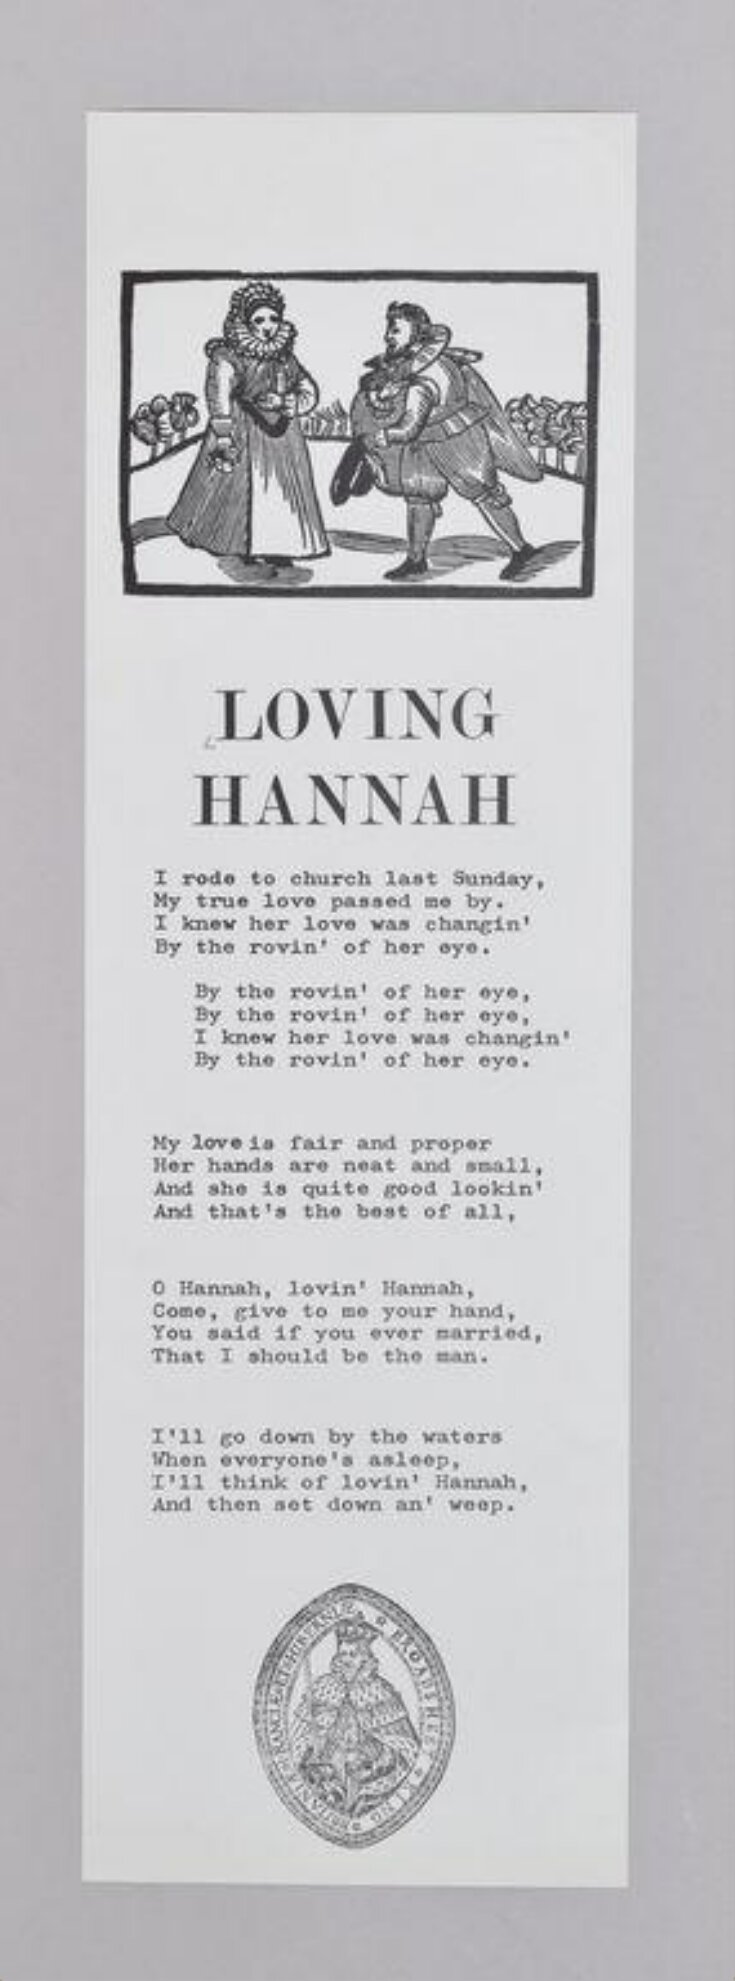 Loving Hannah image